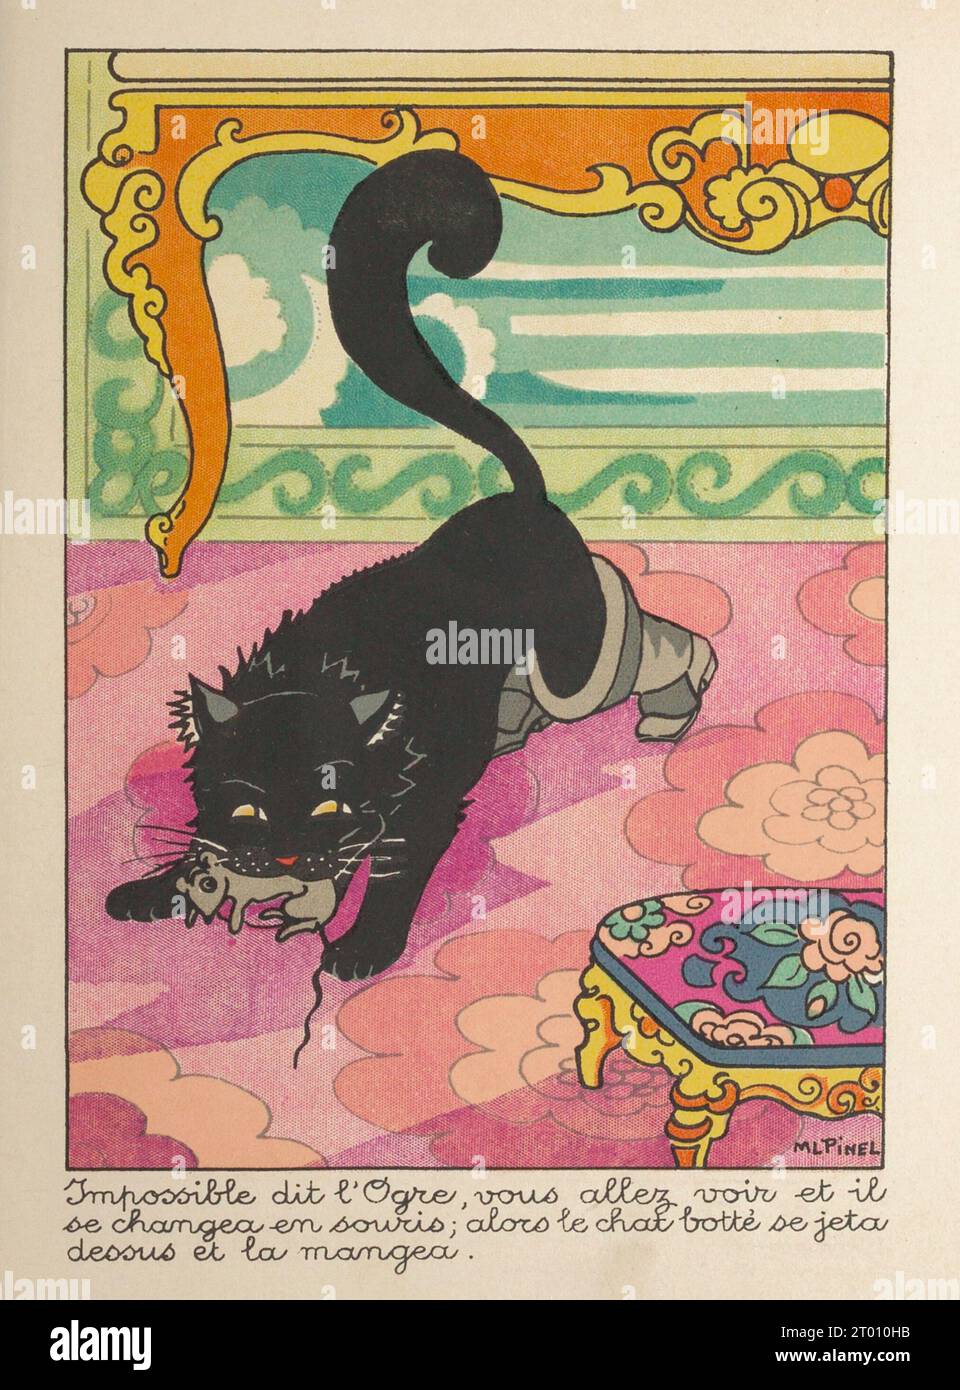 Cucito, l'orco si trasforma in un topo e viene immediatamente catturato dal gatto. Illustrazione pubblicata nel libro "le chat botté" di Marie-Louise Pinel, pubblicato da Bourgeois Ainé nel 1890. Foto Stock